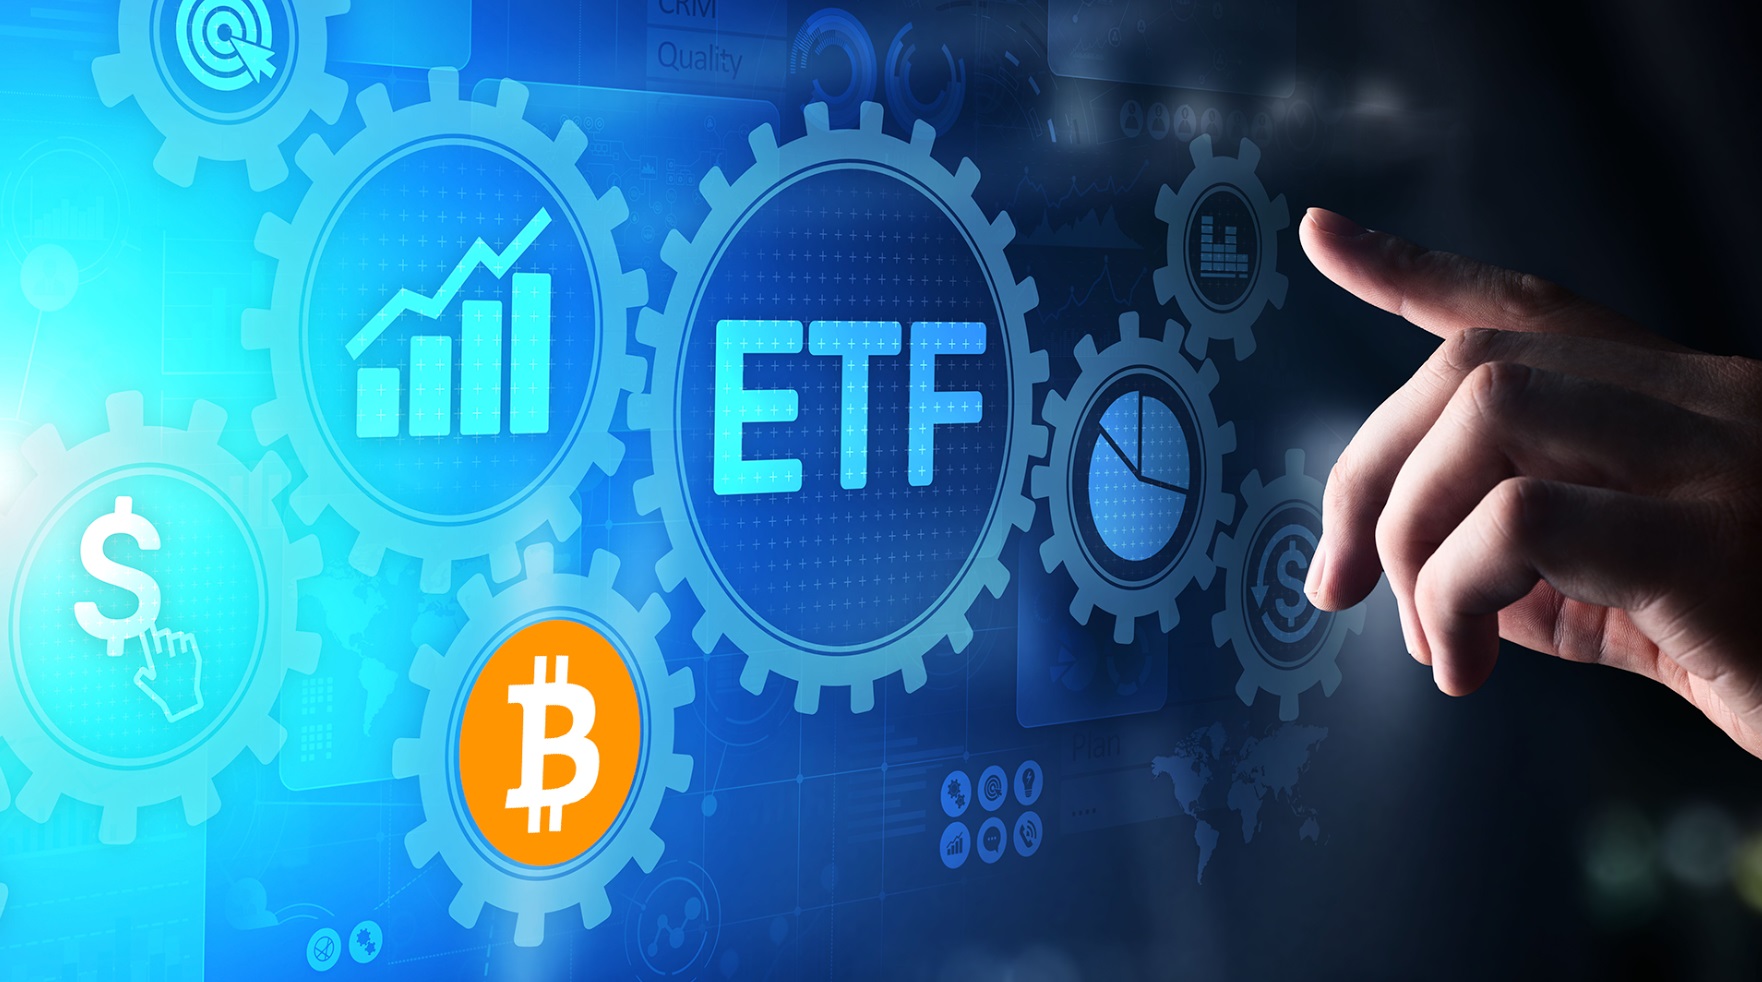 🔴 >> La espera en su recta final: aumentan expectativas sobre aprobación de los ETF de bitcoin